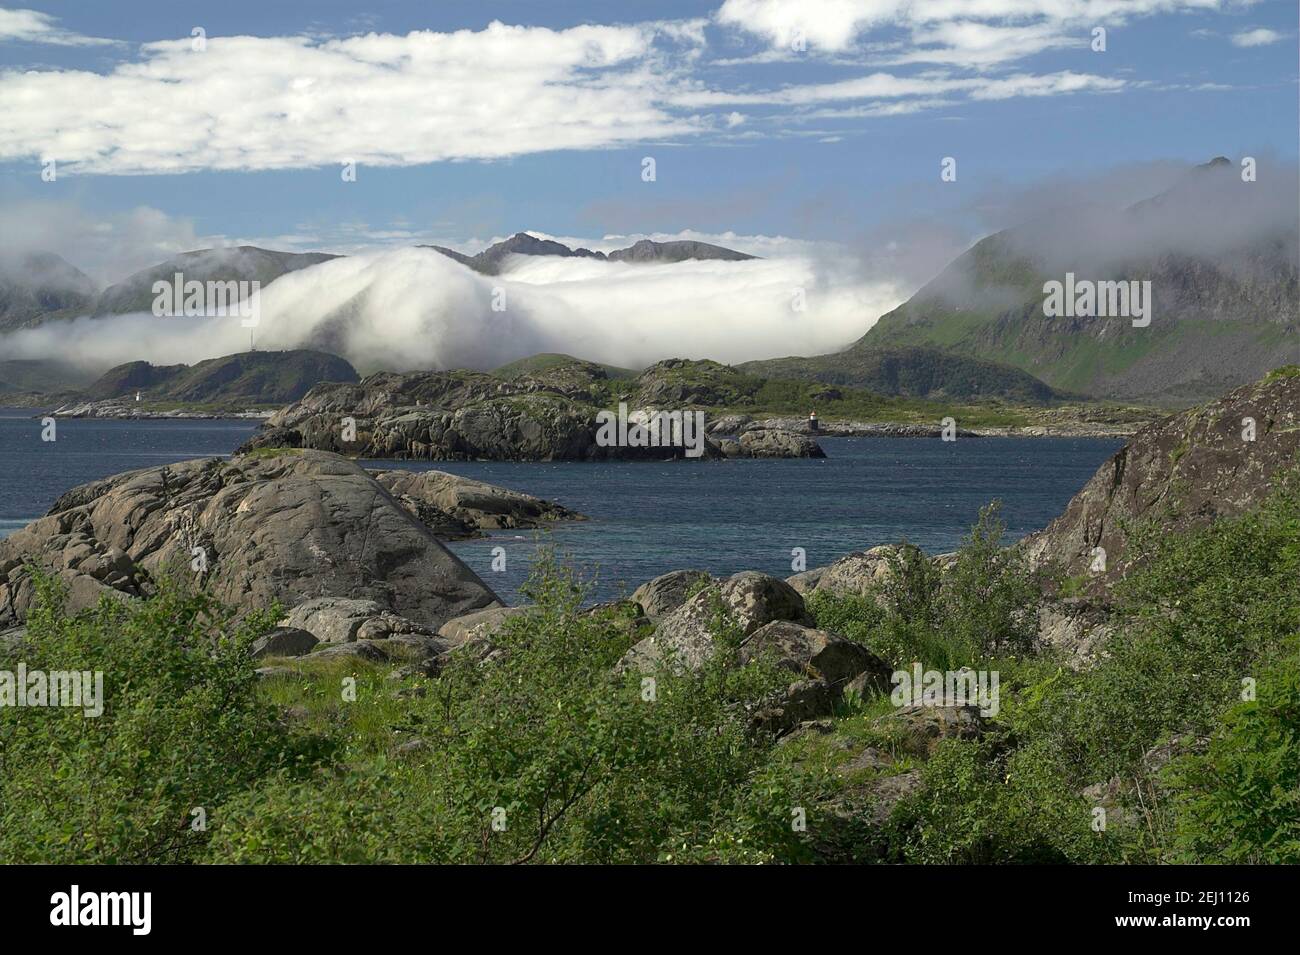 Lofoten, Lofoty, Norvegia, Norvegia; Montagne Rocciose e il mare - un tipico paesaggio estivo nella Norvegia settentrionale dietro il Circolo polare Artico. Foto Stock